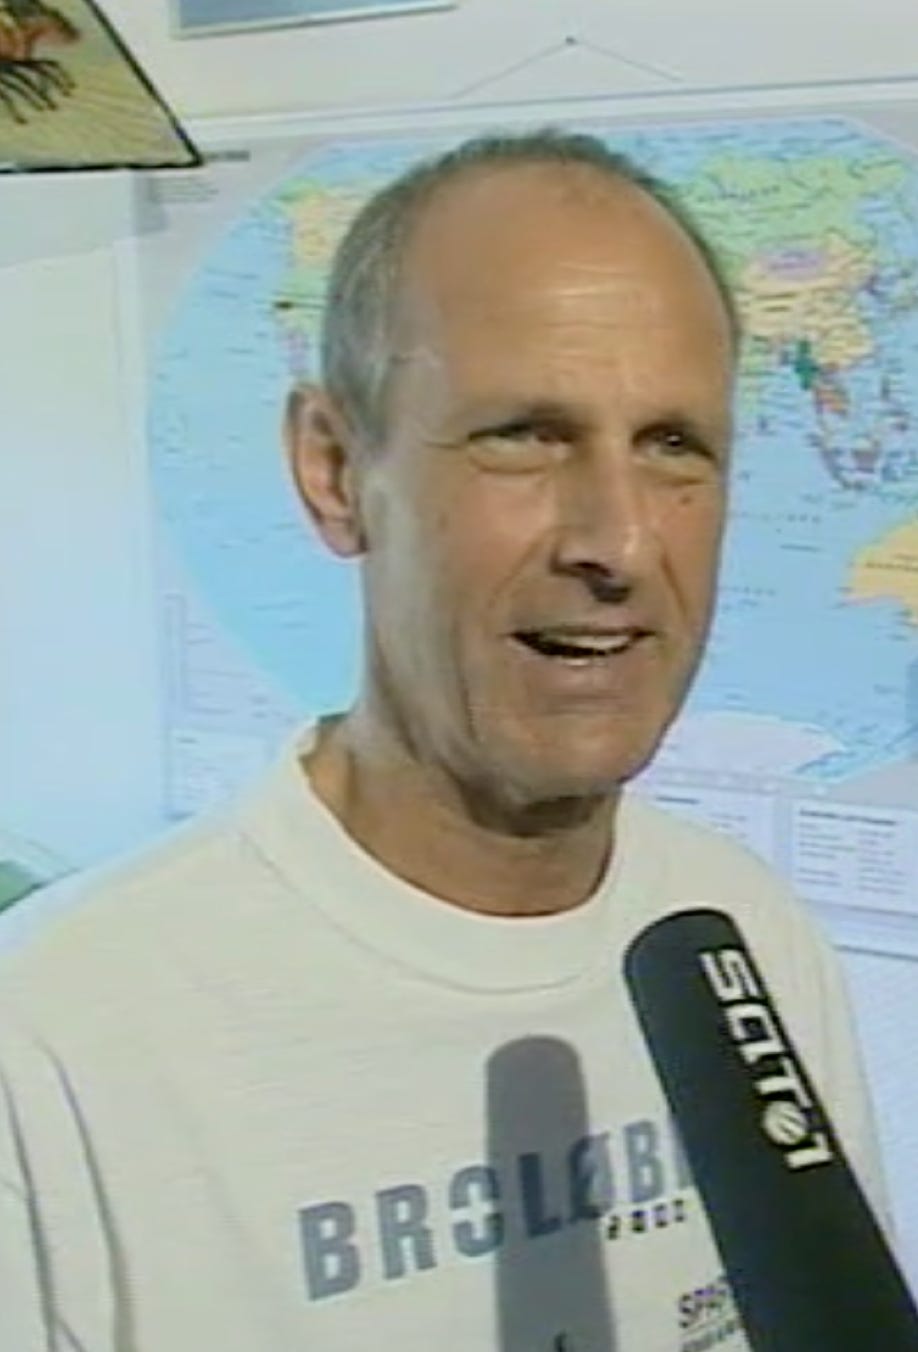 Arno Teichmann 2006 als er den Halb-Marathon auf der chinesischen Mauer gelaufen ist.